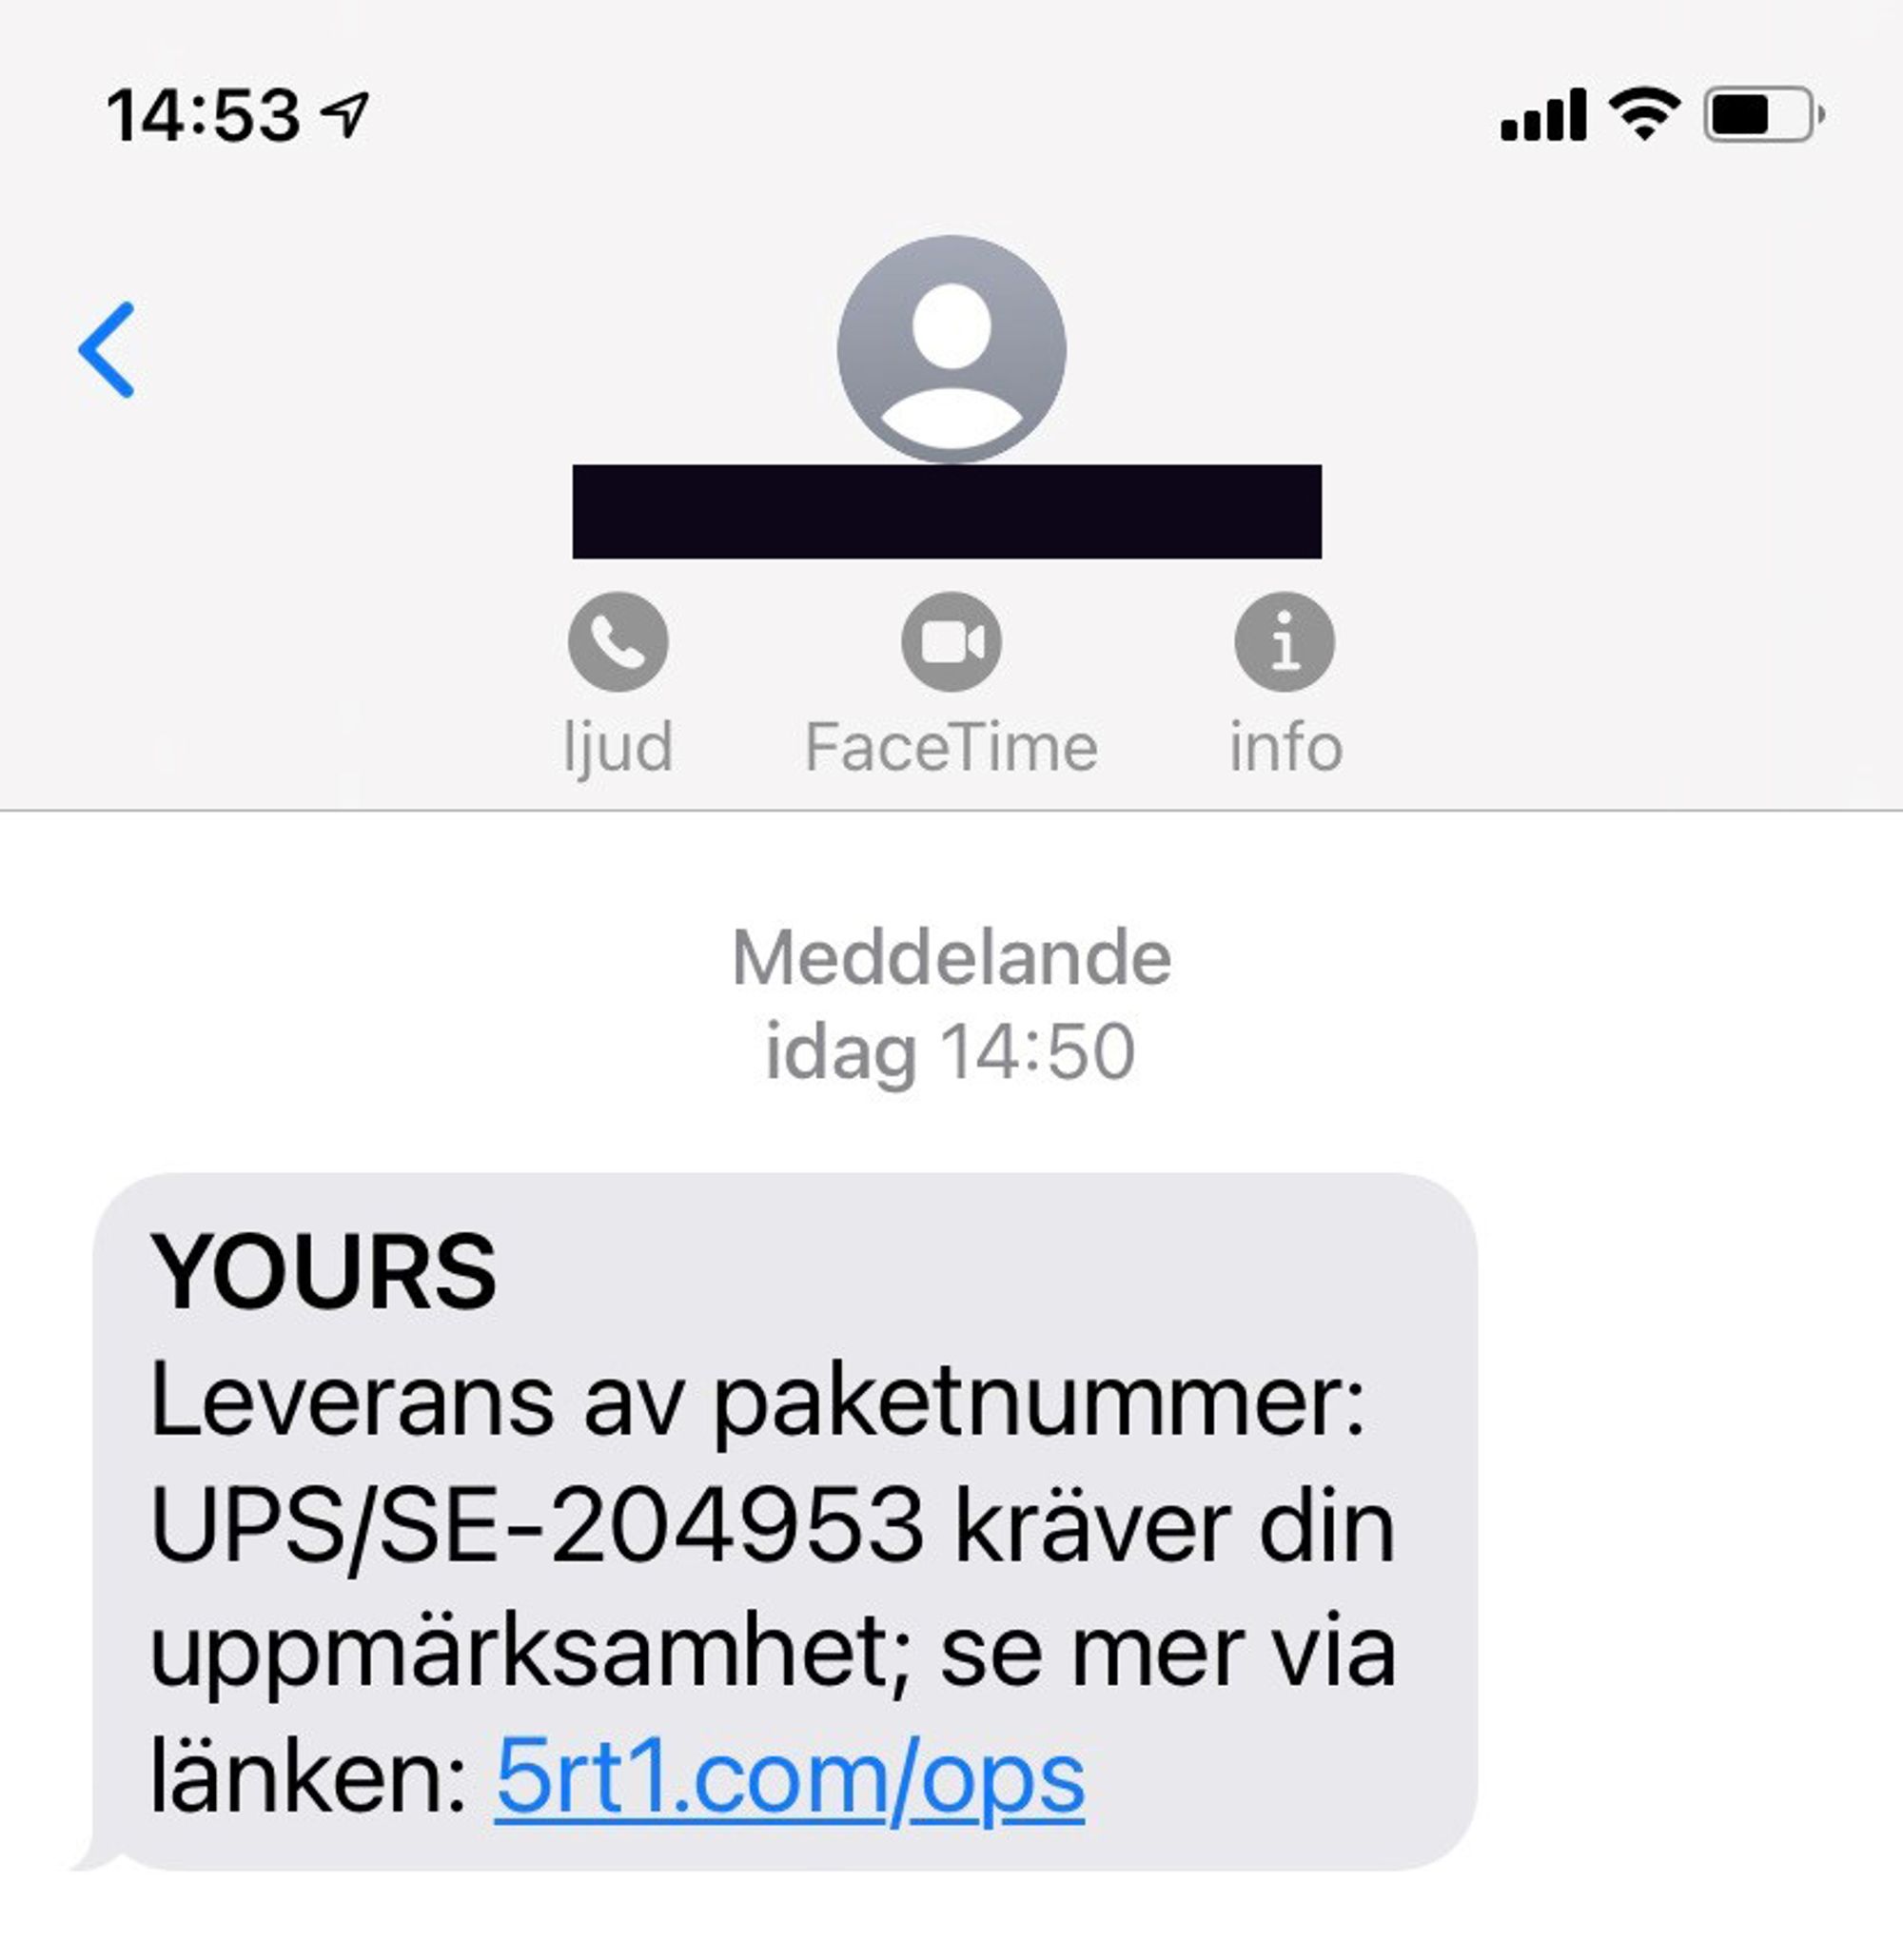 Falskt sms som ser ut att komma från UPS